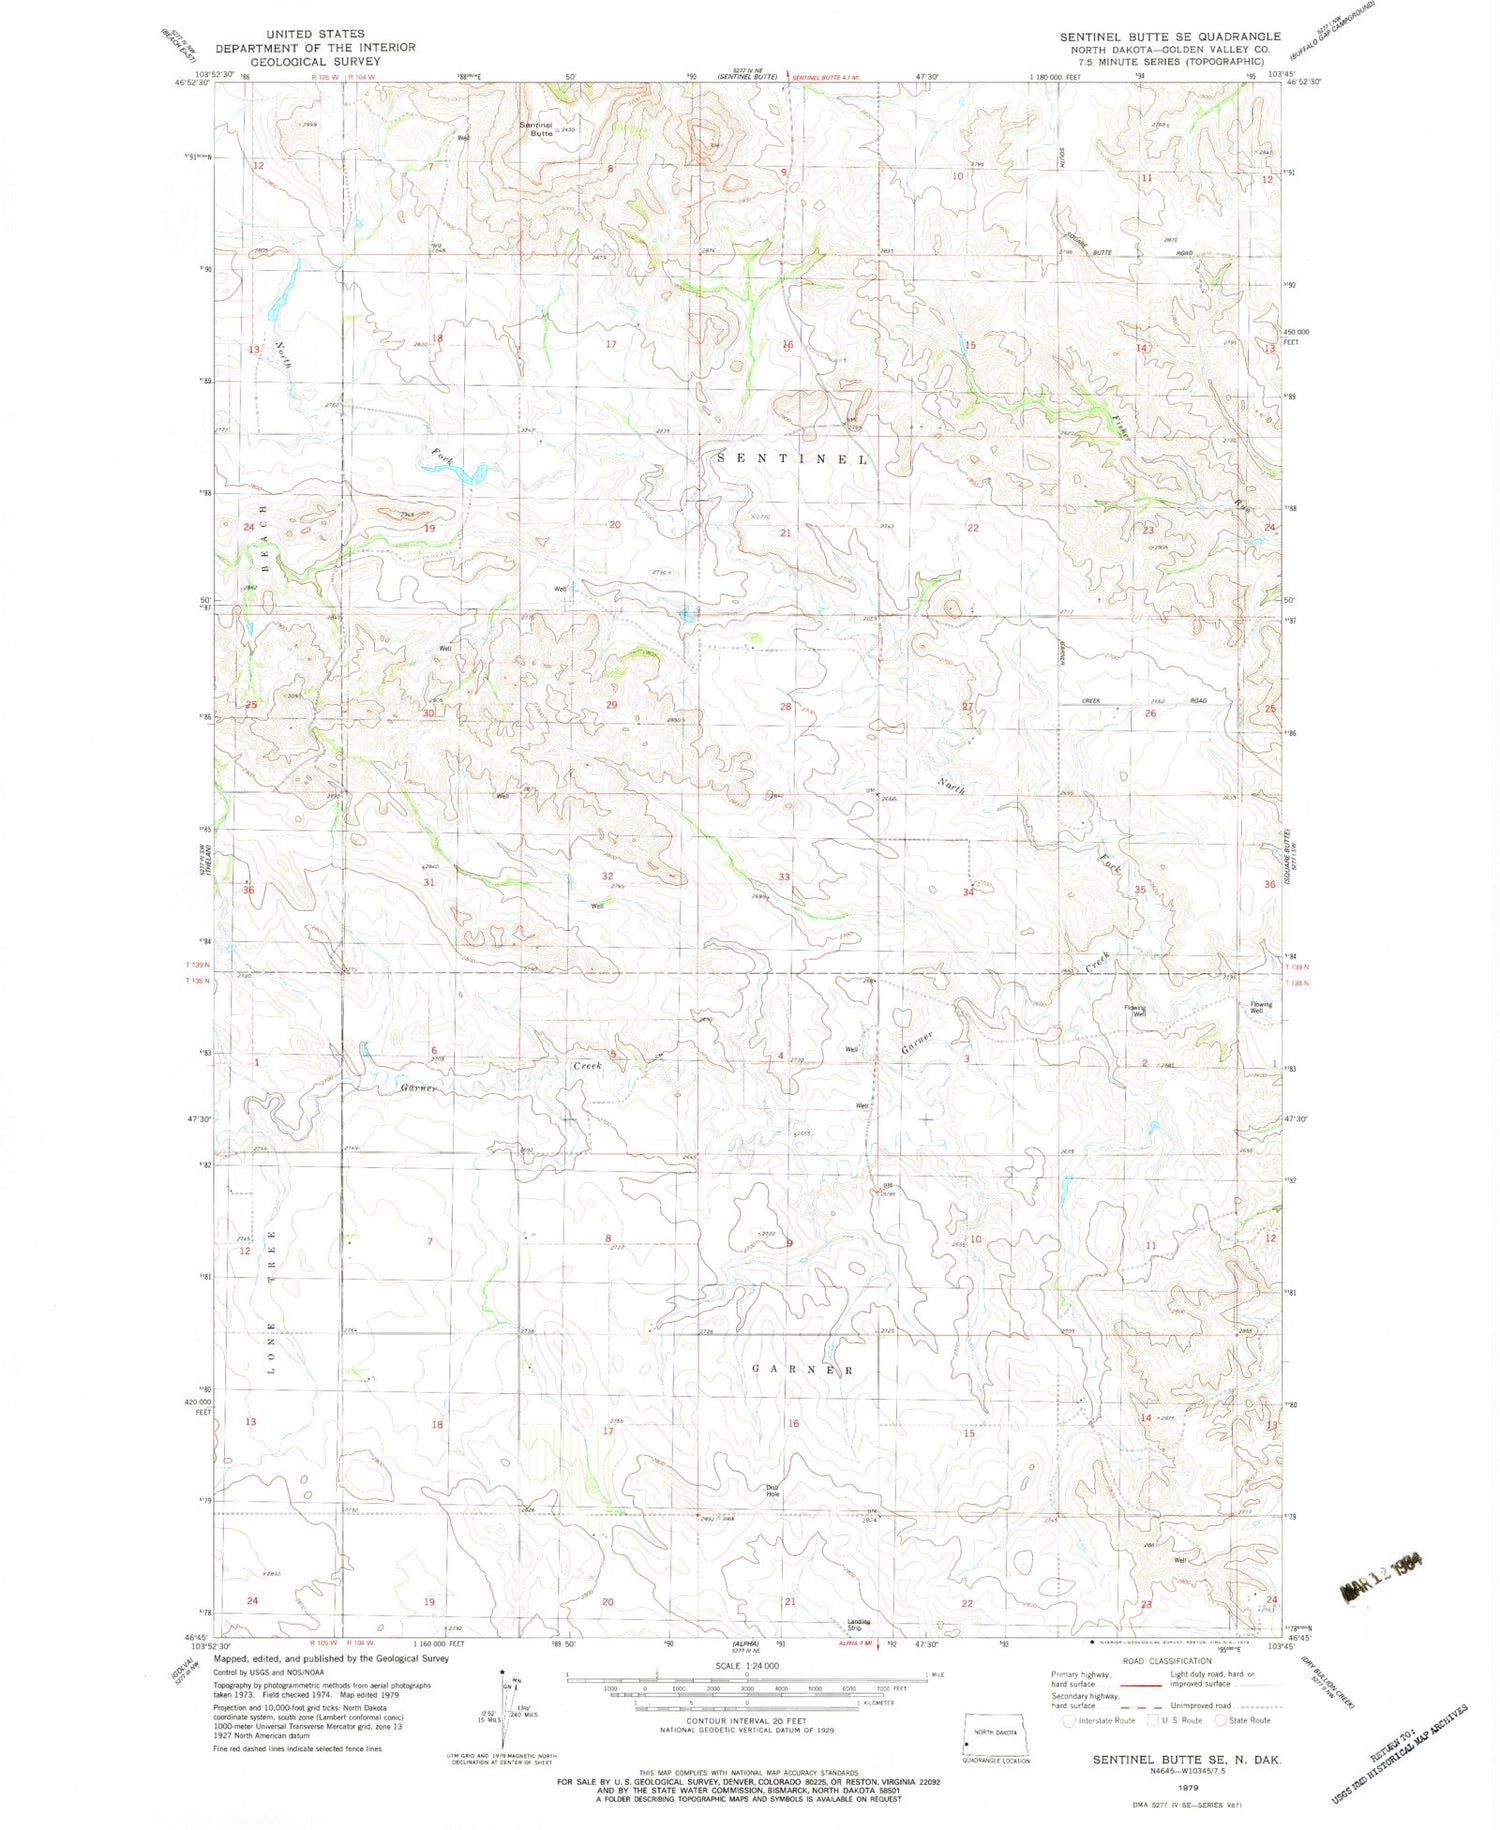 Classic USGS Sentinel Butte SE North Dakota 7.5'x7.5' Topo Map Image